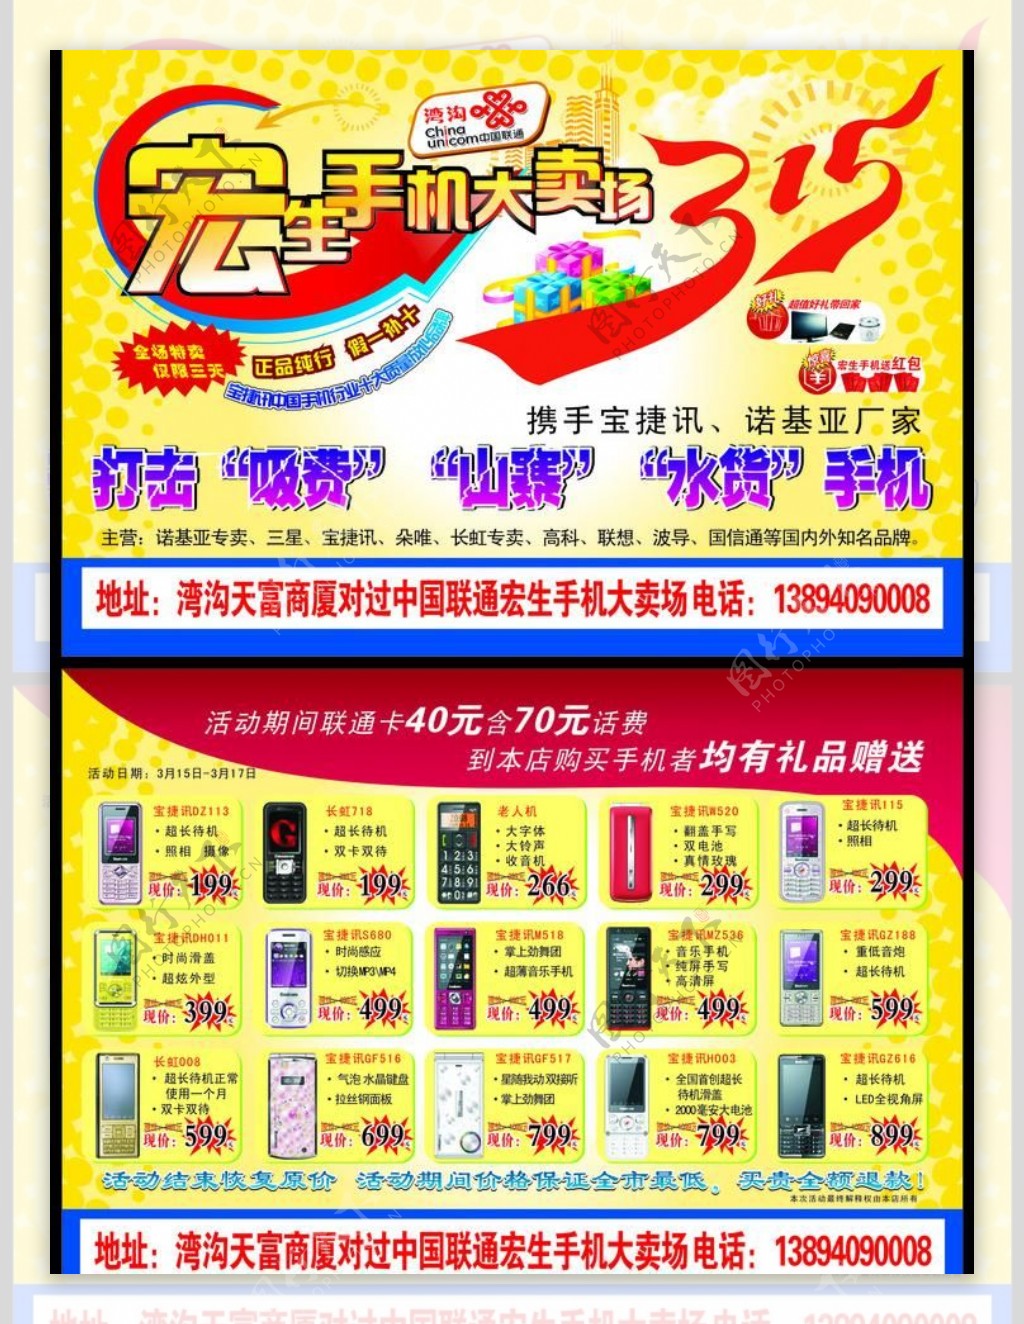 手机卖场宣传海报分布在2个页面图片